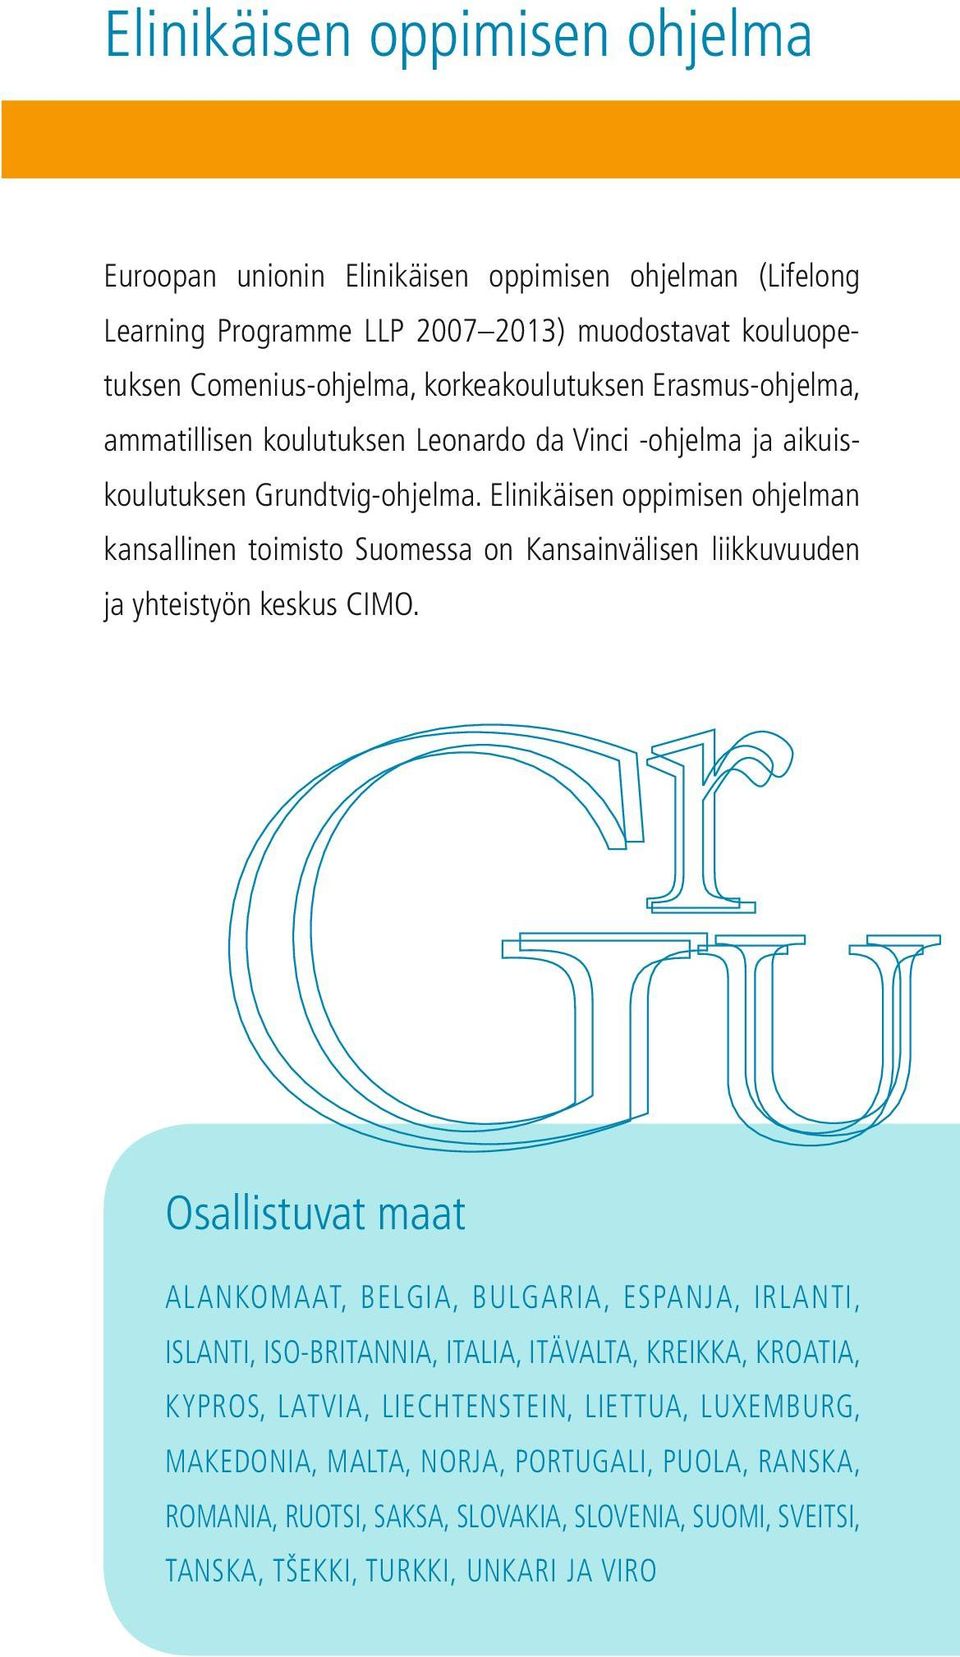 Elinikäisen oppimisen ohjelman kansallinen toimisto Suomessa on Kansainvälisen liikkuvuuden ja yhteistyön keskus CIMO.